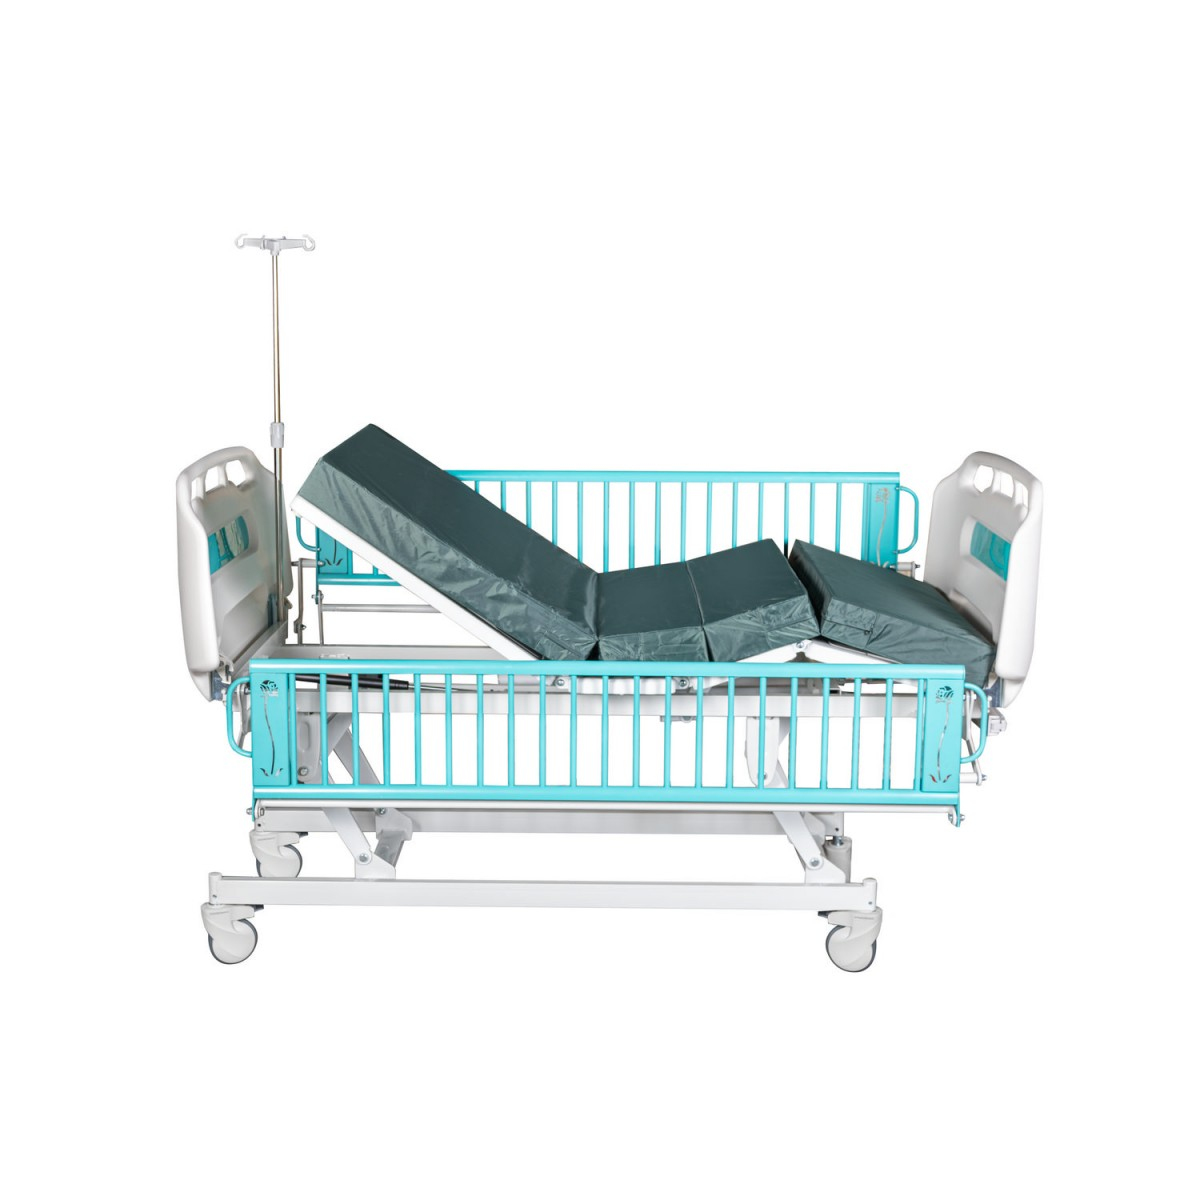 Функціональне дитяче ліжко CD3q